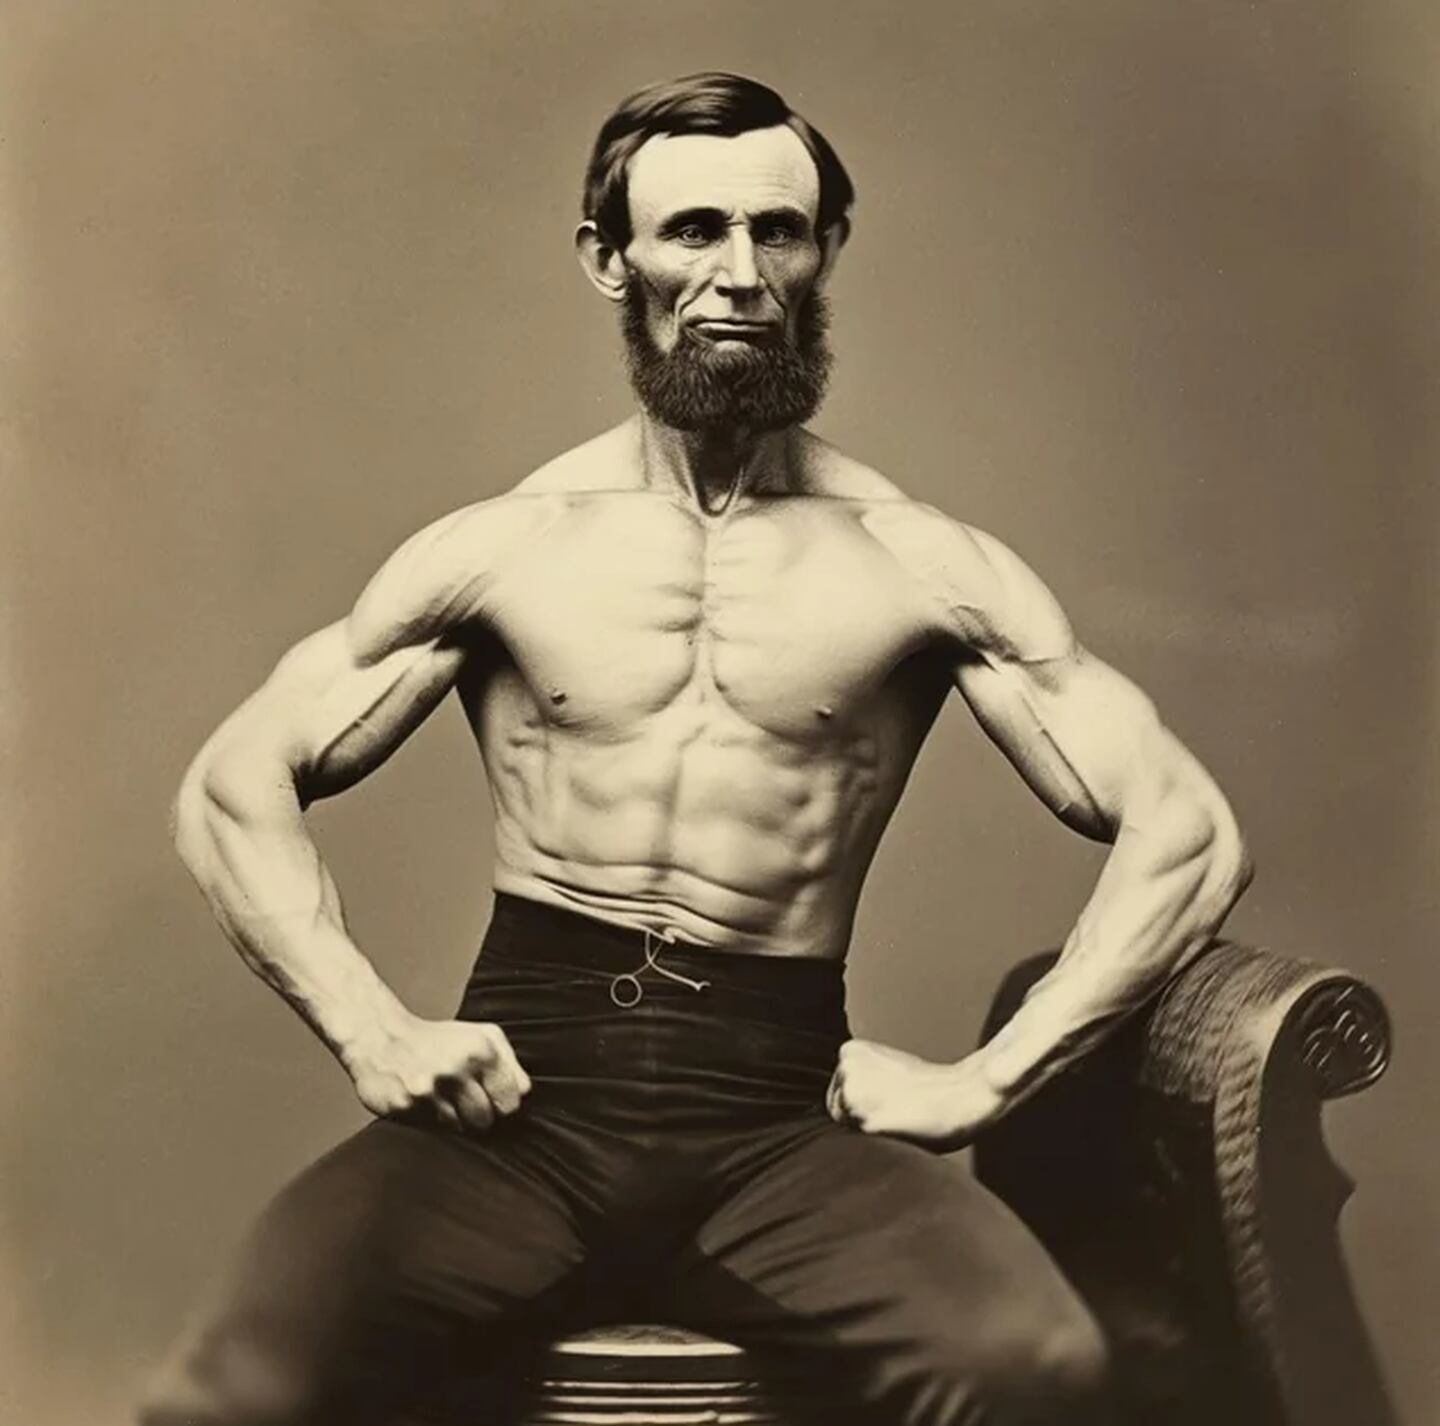 Abraham Lincoln con cuerpo atlético, según la IA.